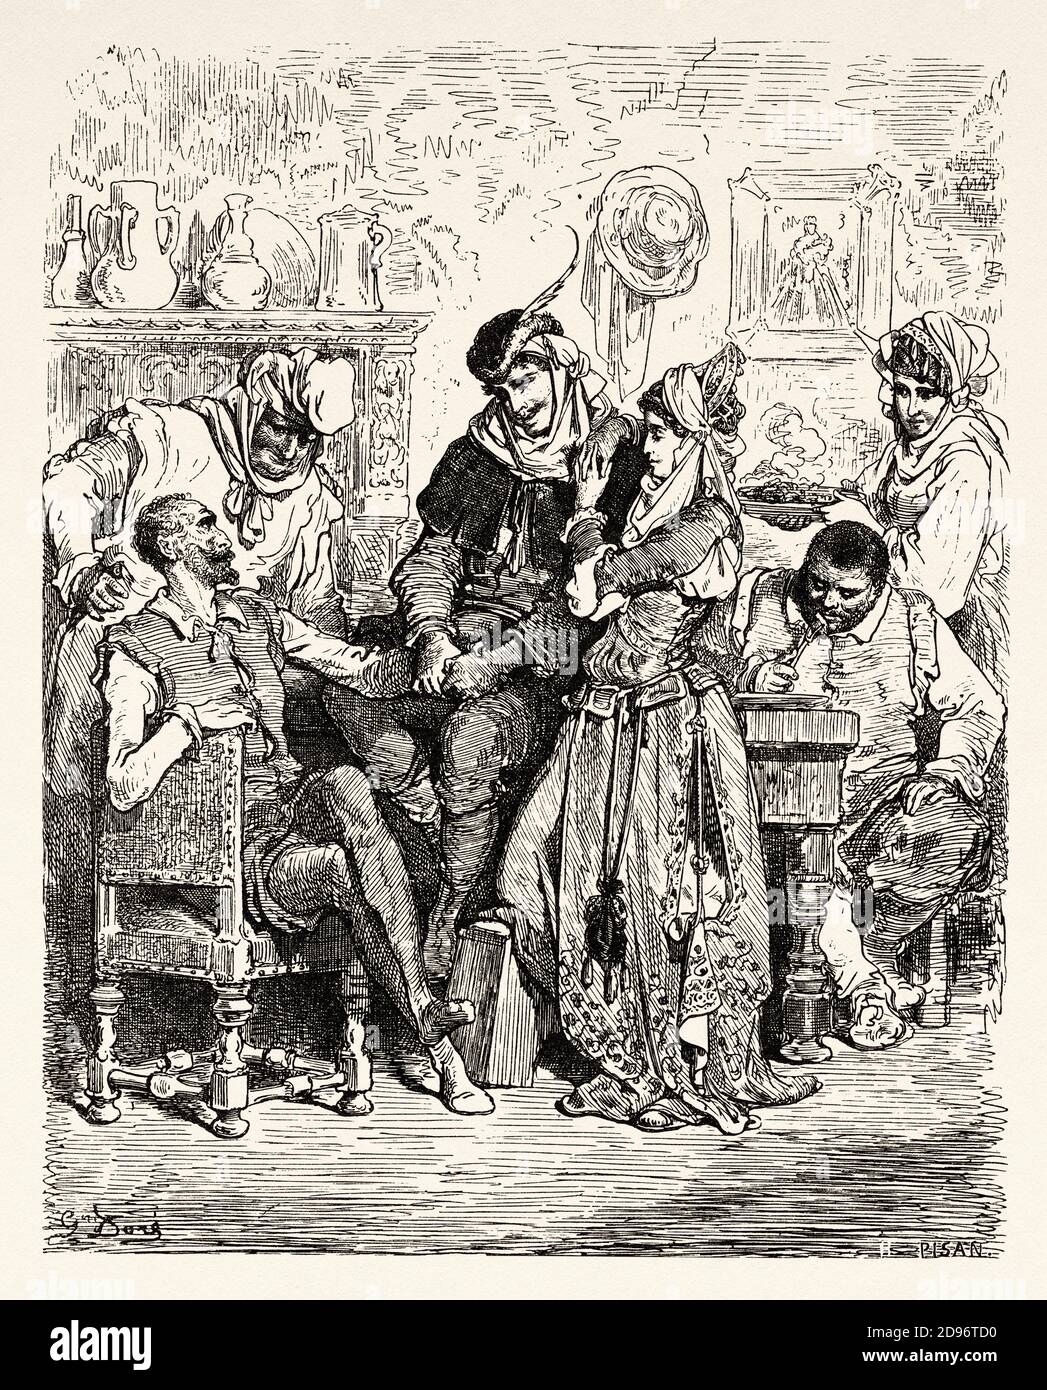 Don Quixote by Miguel de Cervantes Saavedra. Old XIX century engraving ...